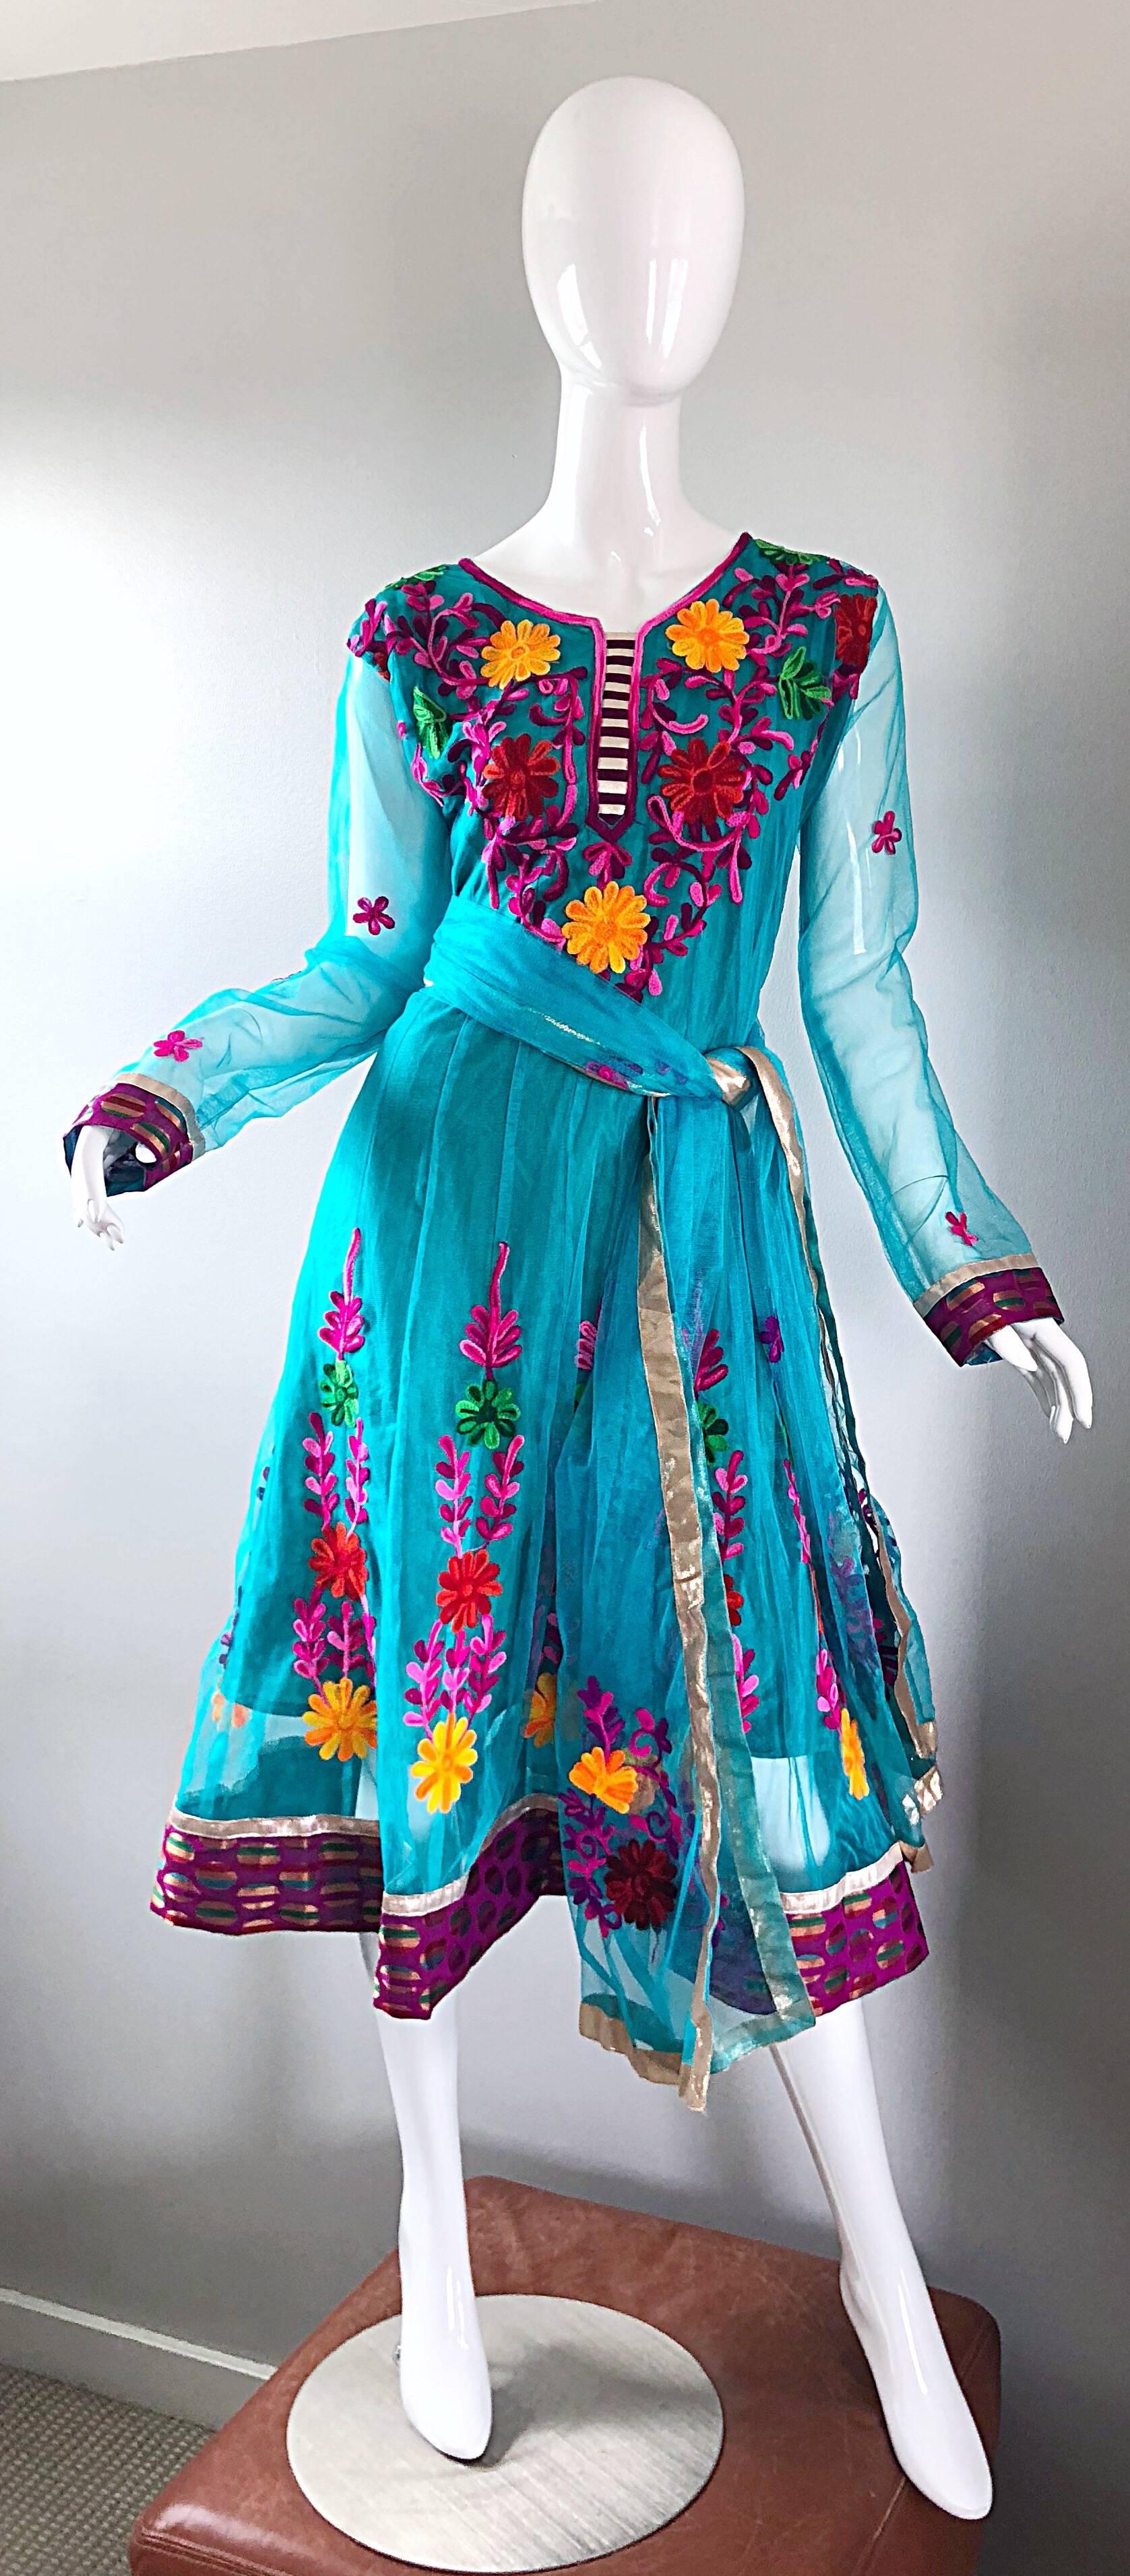 Superbe robe indienne boho kurta des années 1970, bleu turquoise, colorée et brodée, avec ceinture ! Les fleurs brodées à la main sont de couleurs vives : fuchsia, violet, rouge, jaune marigold, rose et vert. Superposition de gaze avec des manches